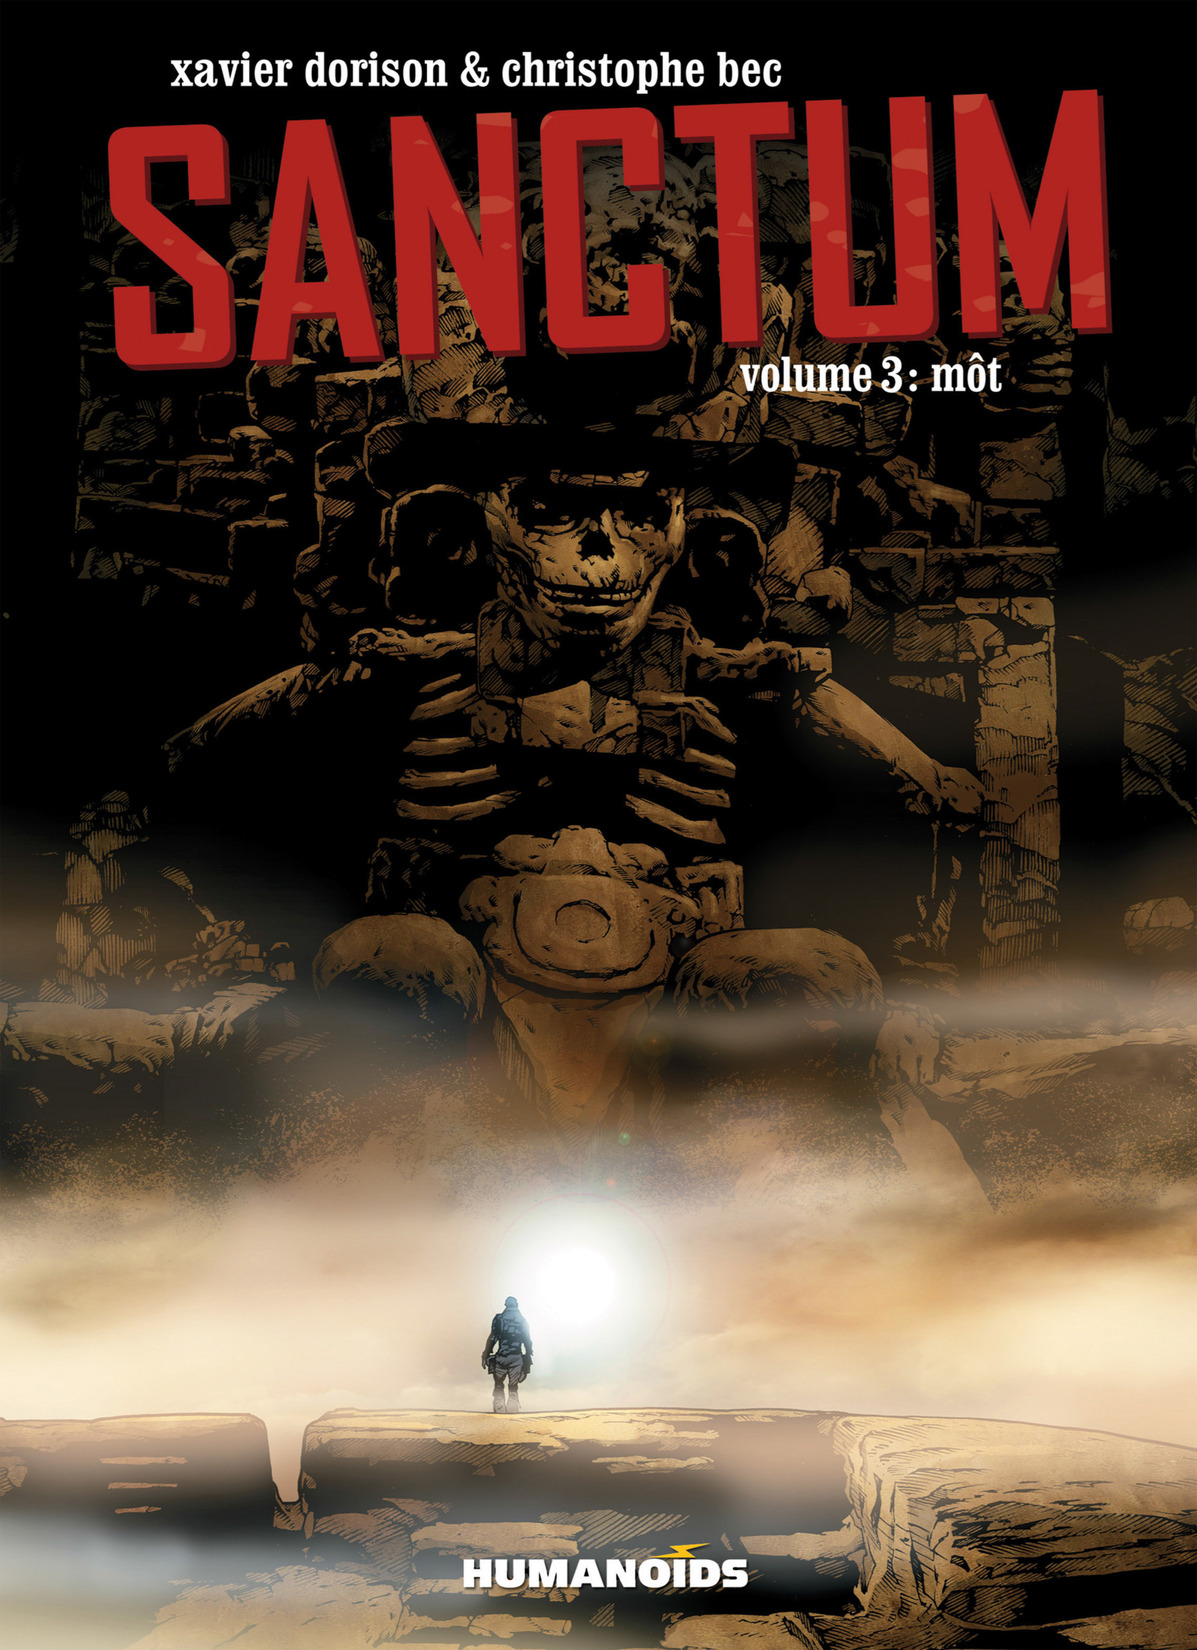 Read online Sanctum comic -  Issue # Vol. 3 - 1